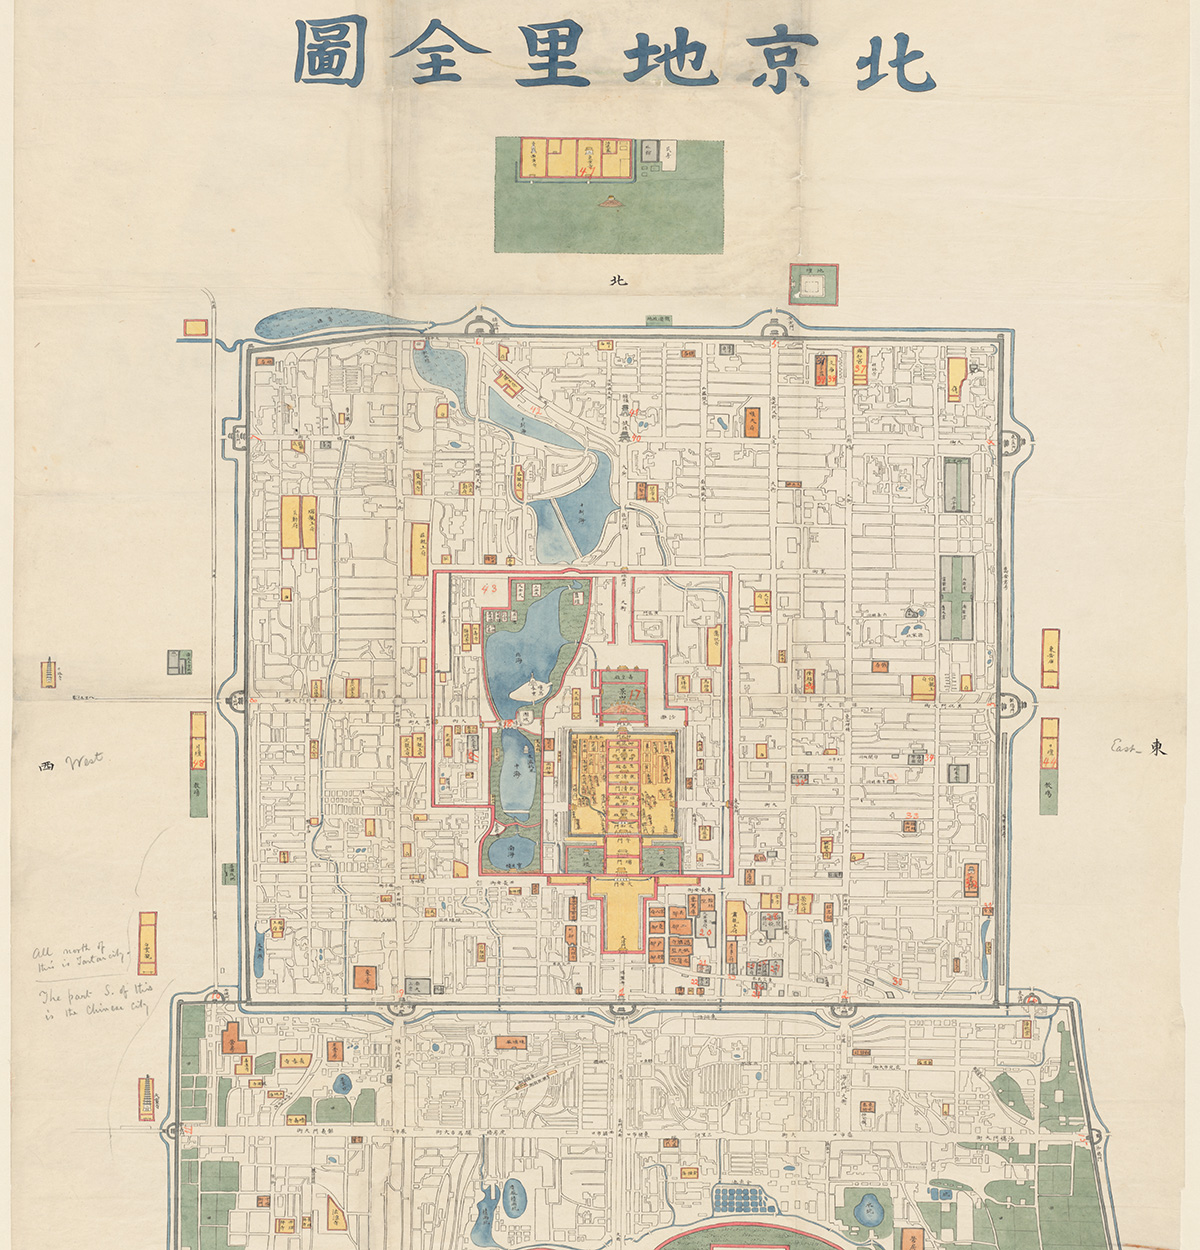 北京手绘老图老北京宫殿建筑胡同北京城区规划等手绘高清老图